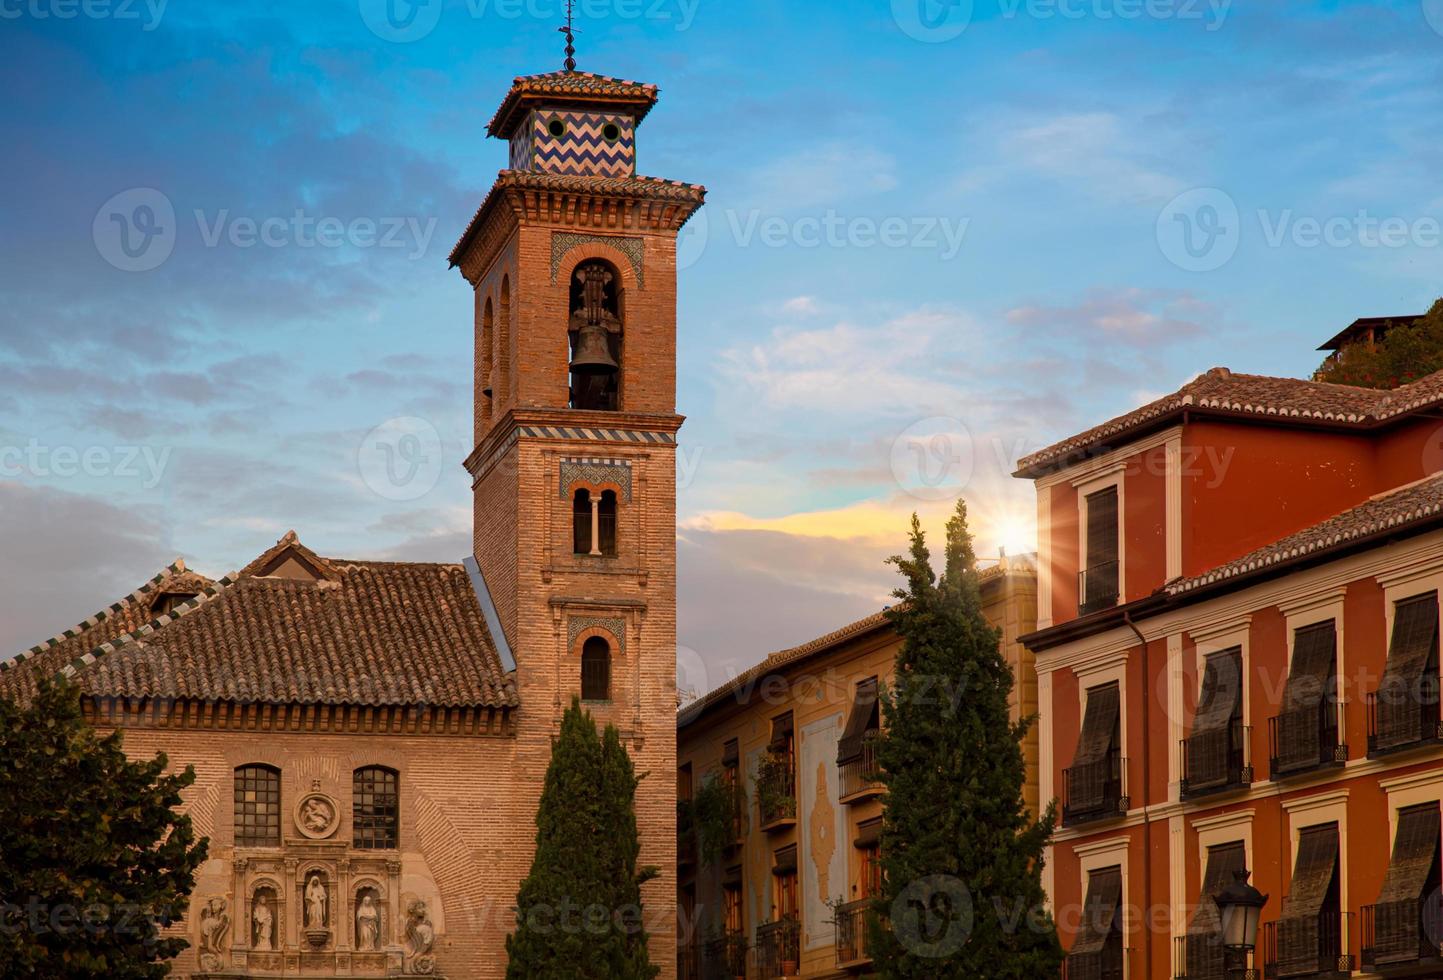 spagna, strade di granada e architettura spagnola in un pittoresco centro storico foto